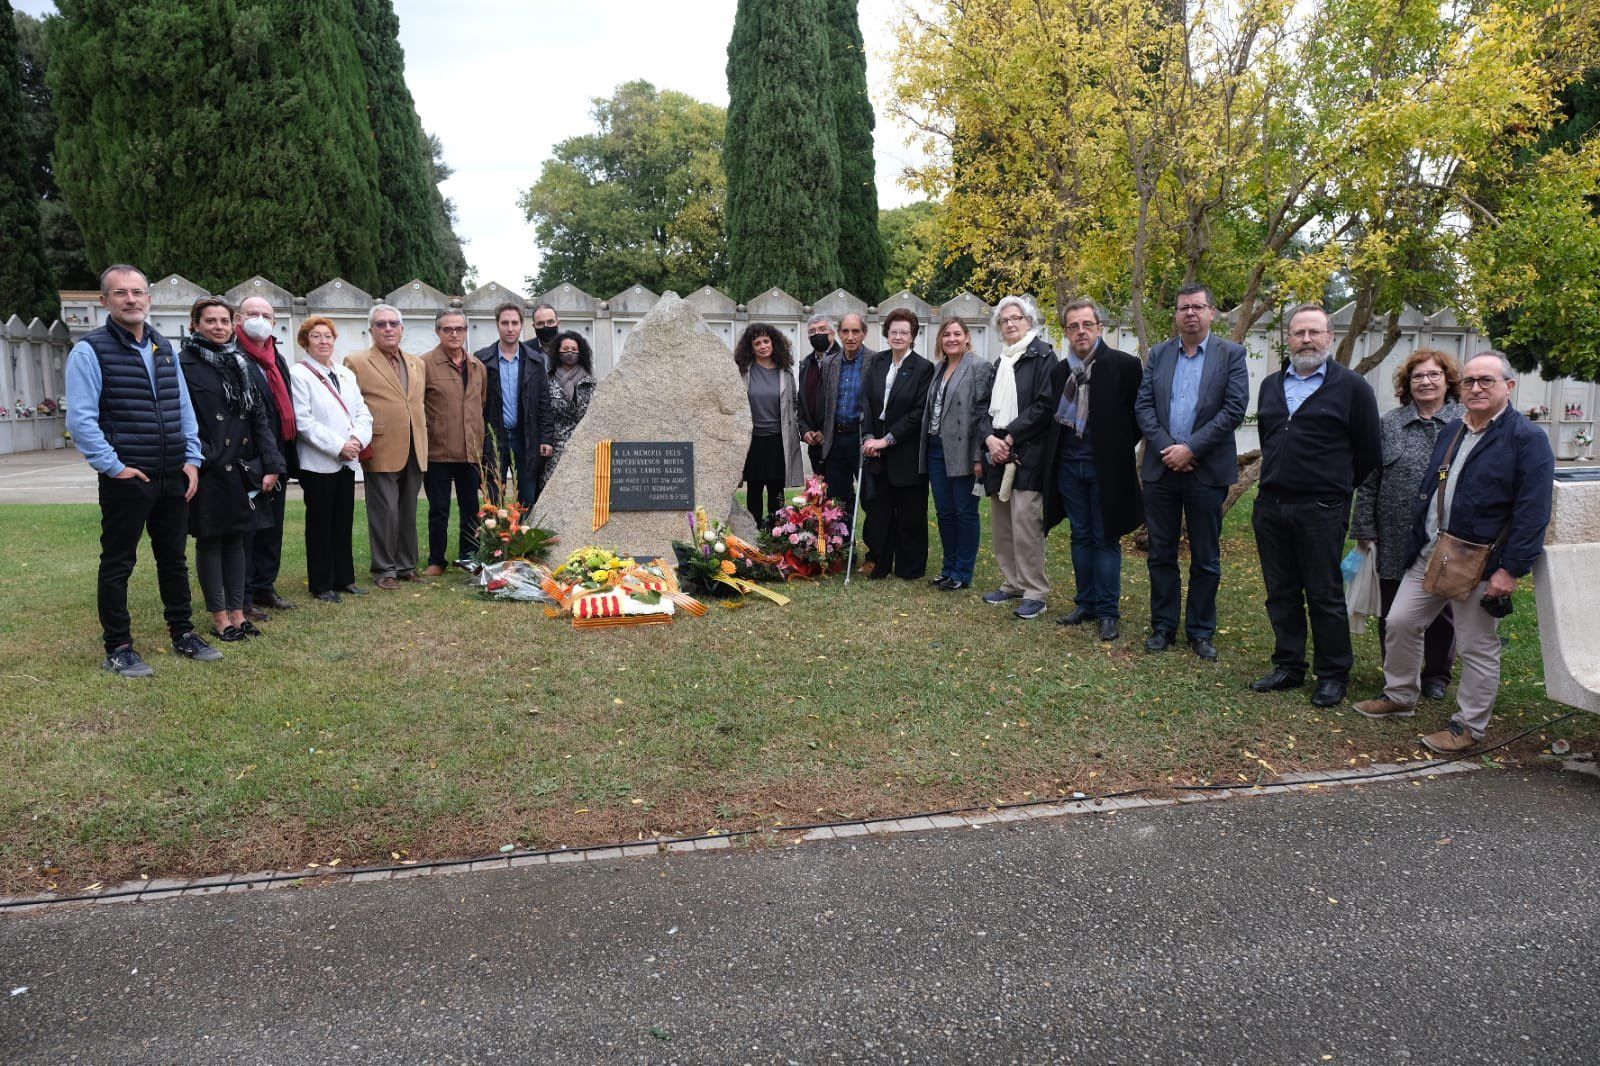 Record per a les víctimes de la guerra del 36 i els represaliats pel franquisme a Figueres per Tots Sants